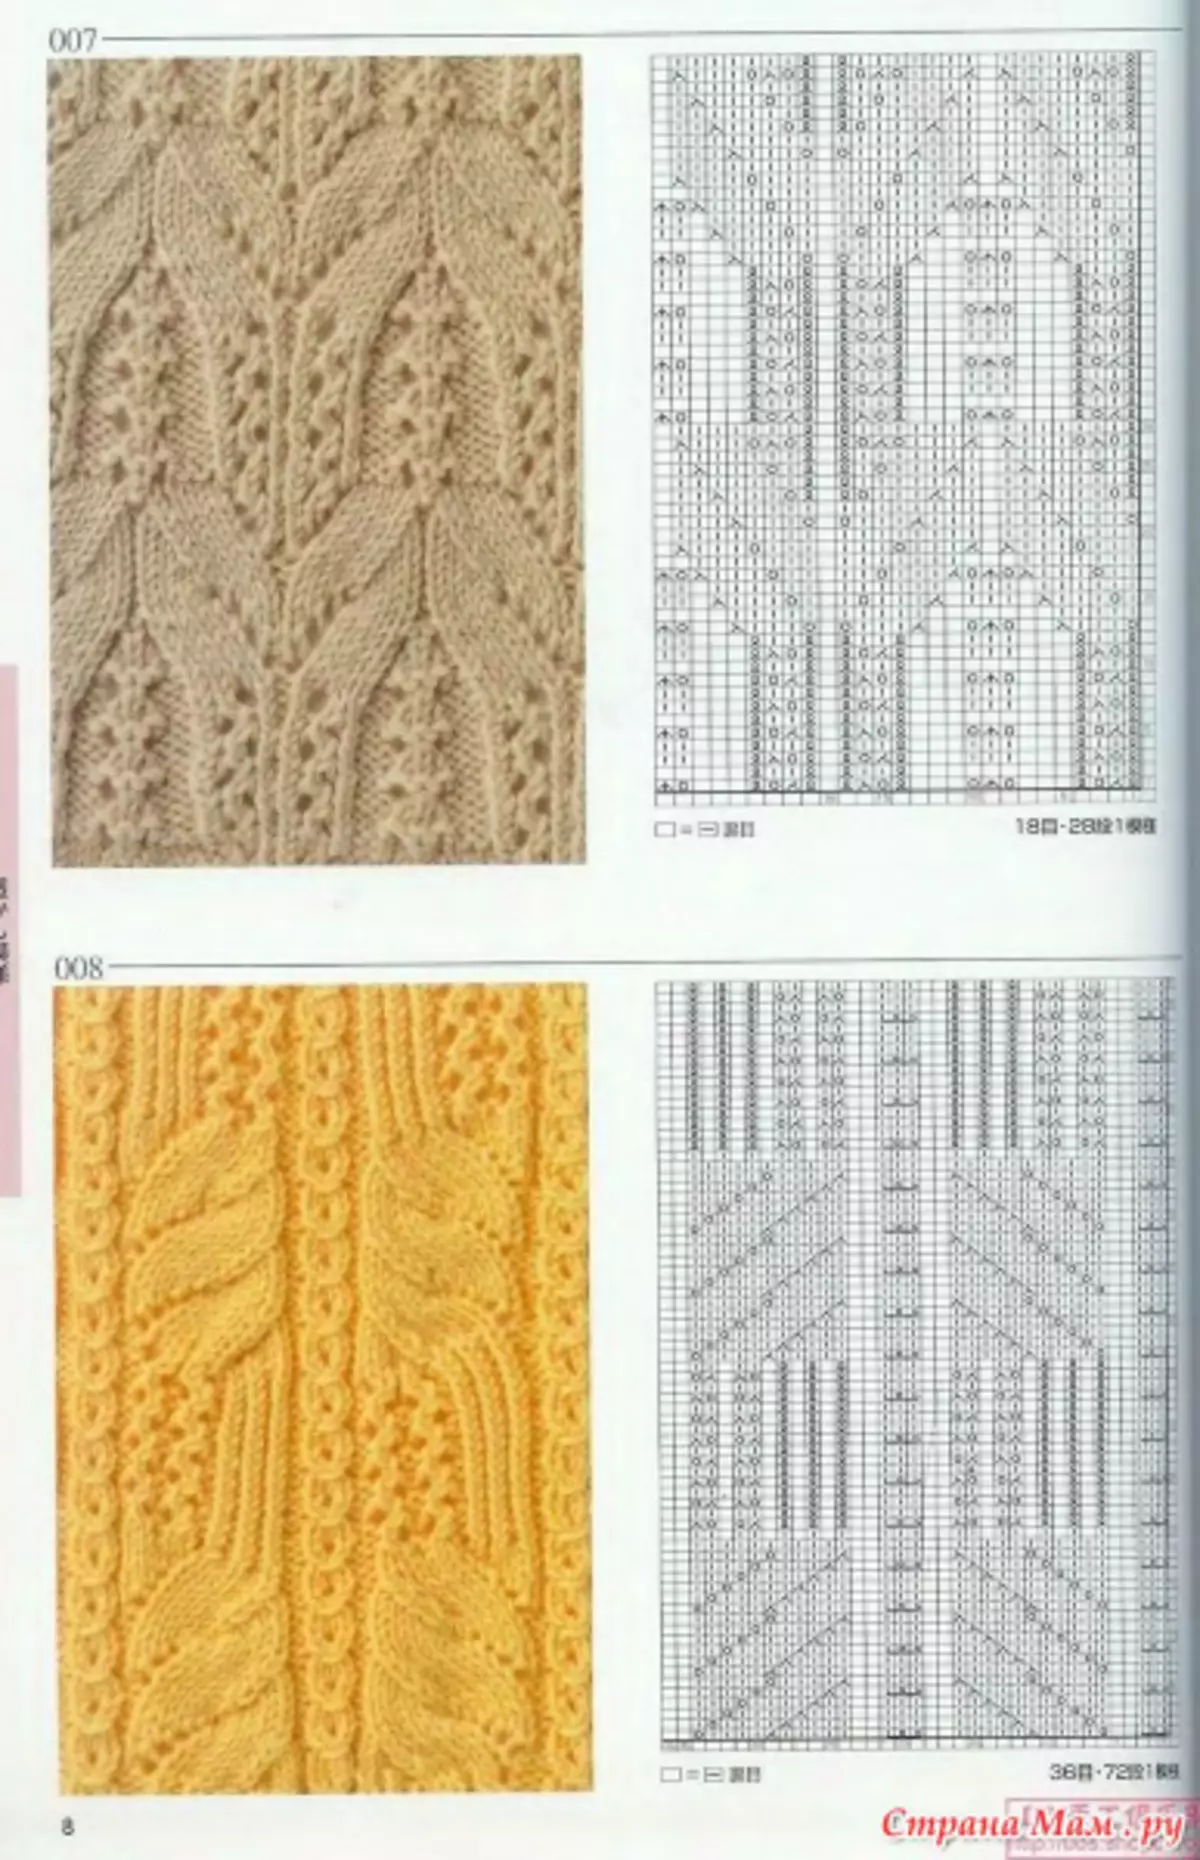 Pleten vzorci z opisi: lepe sheme reliefa in norveških vzorcev z video lekcijami